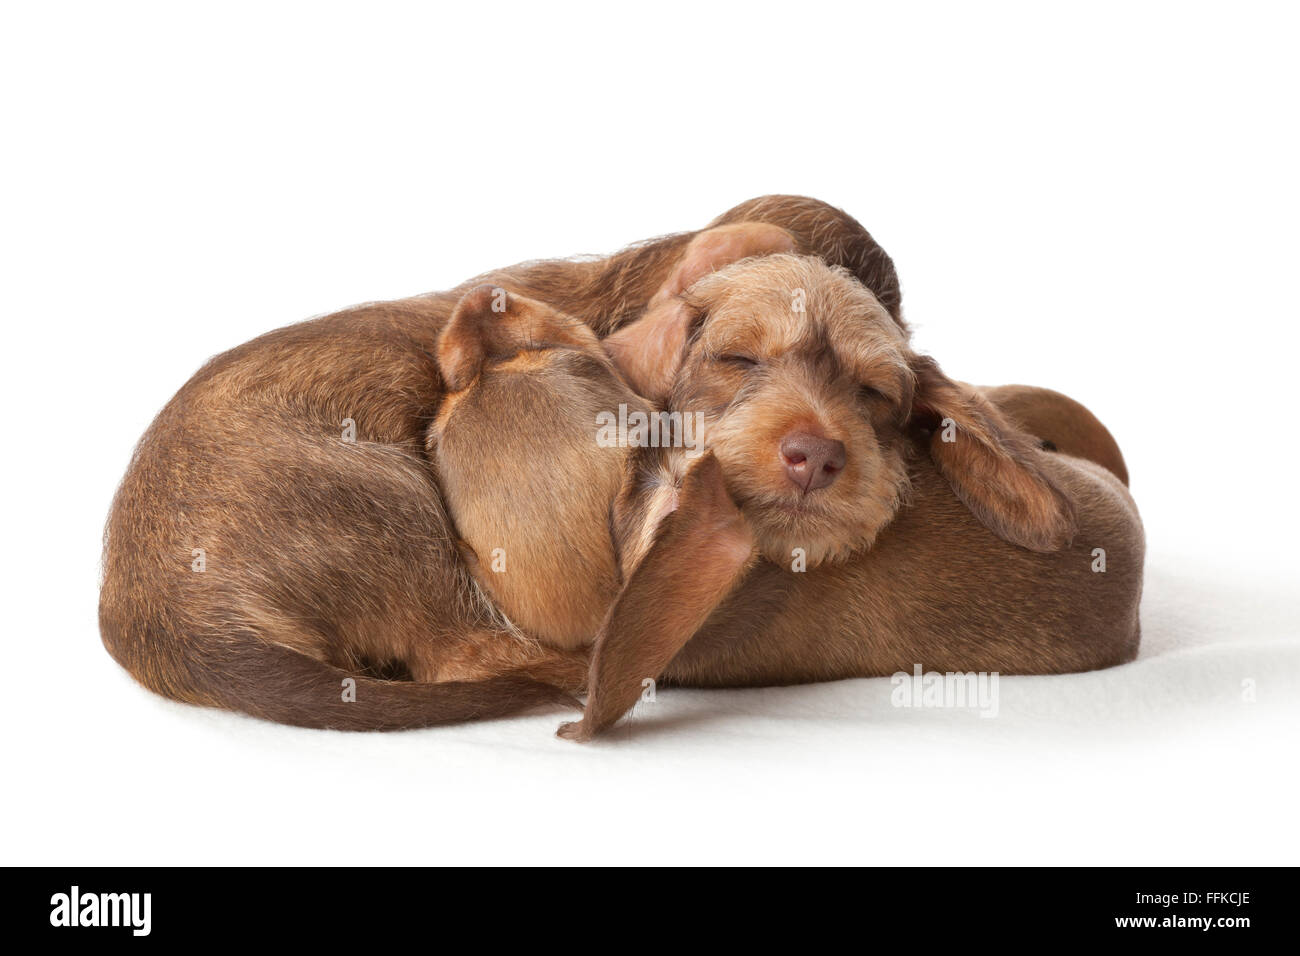 Rauhaar Dackel Welpen schlafen zusammen auf weißem Hintergrund Stockfoto